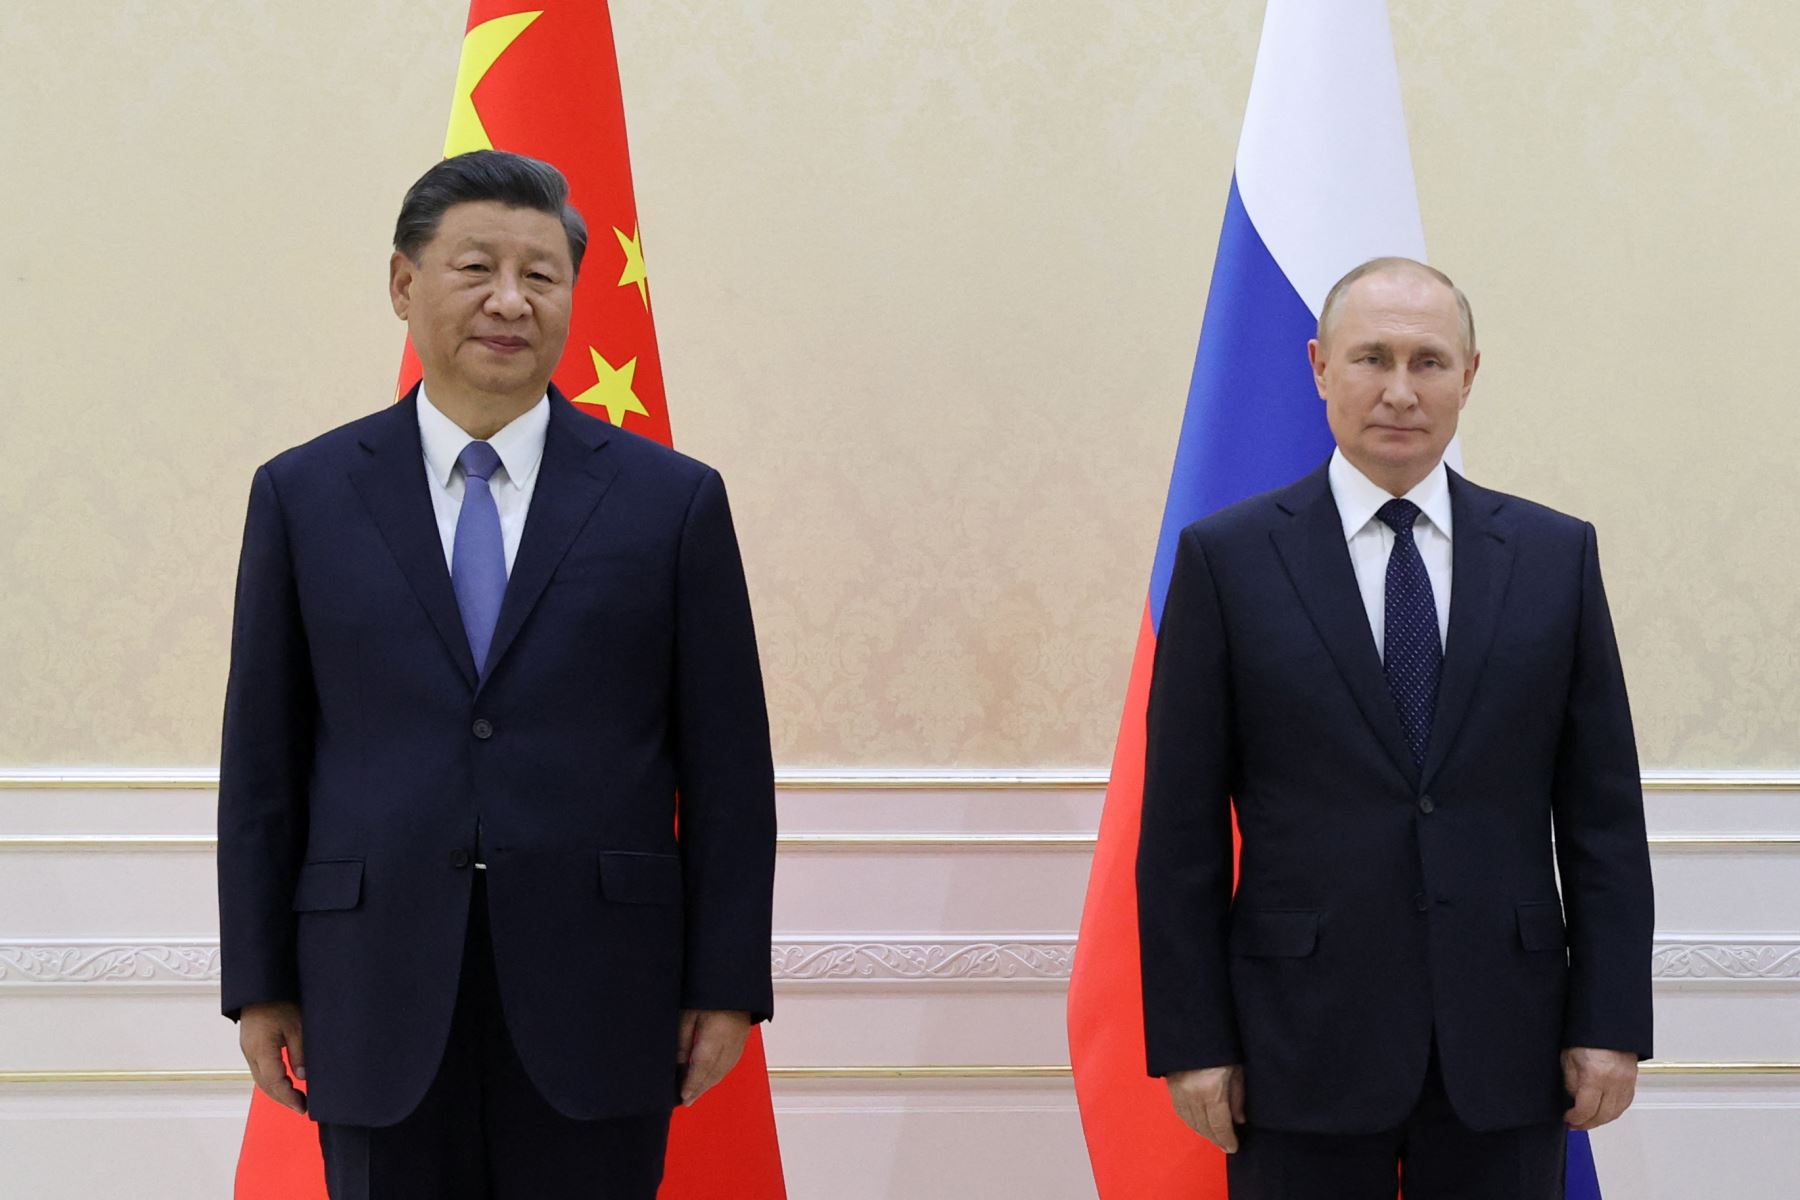 Putin y Xi Jinping elogian las relaciones de dos \"grandes potencias\" frente a Occidente